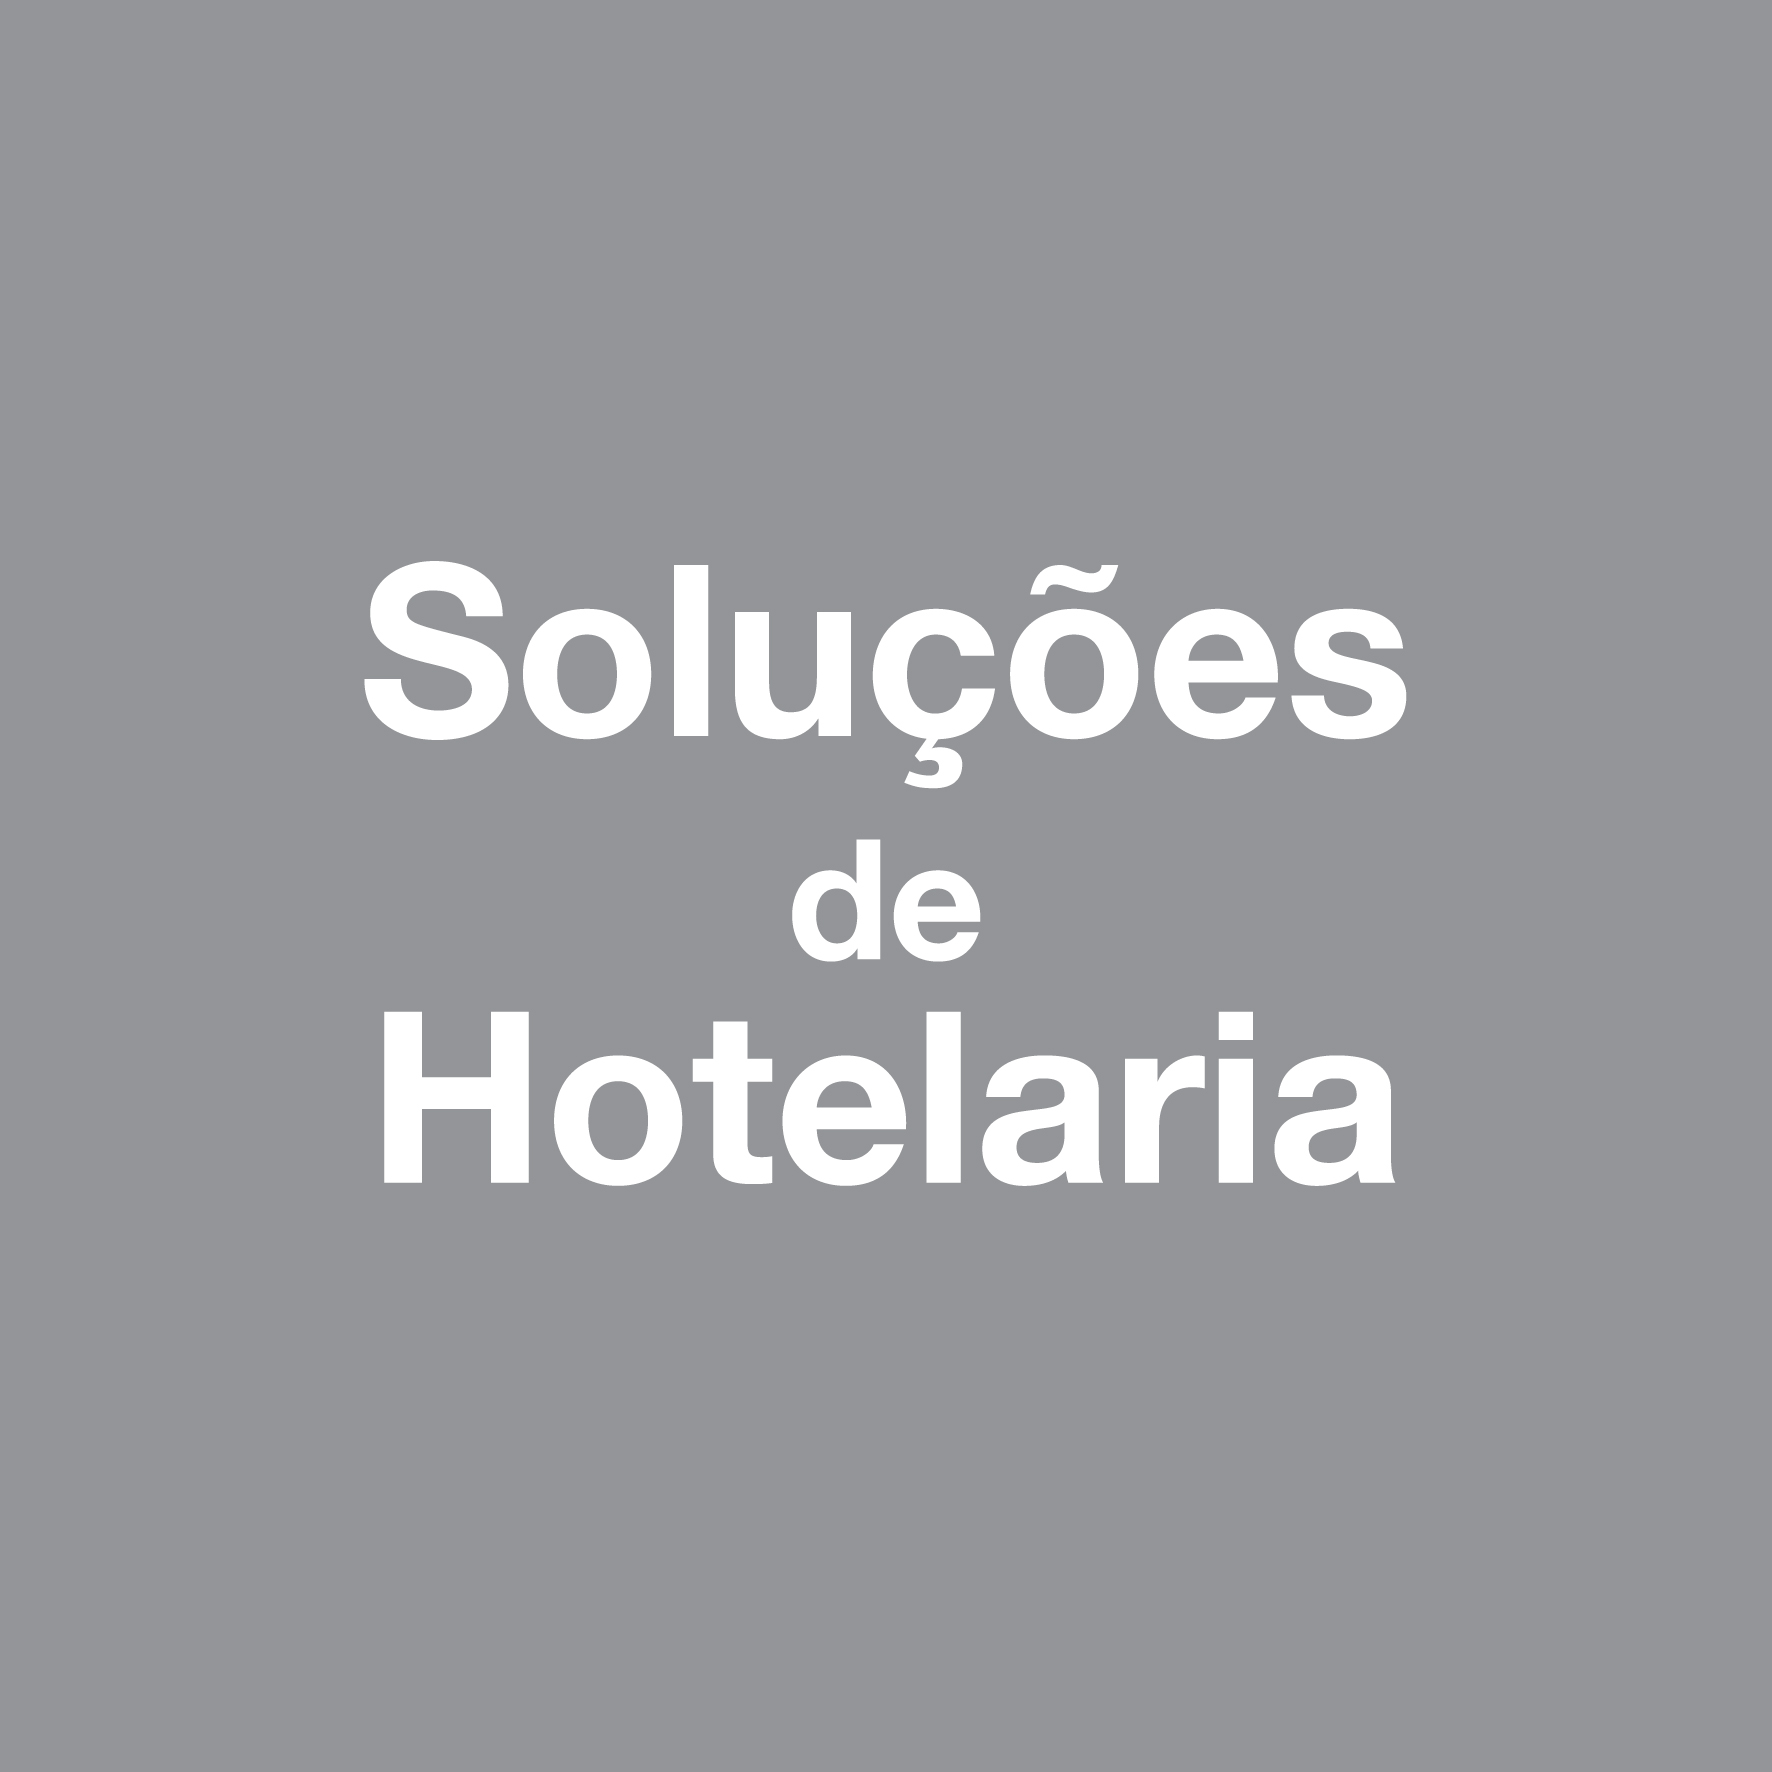 solucoes-hotelaria